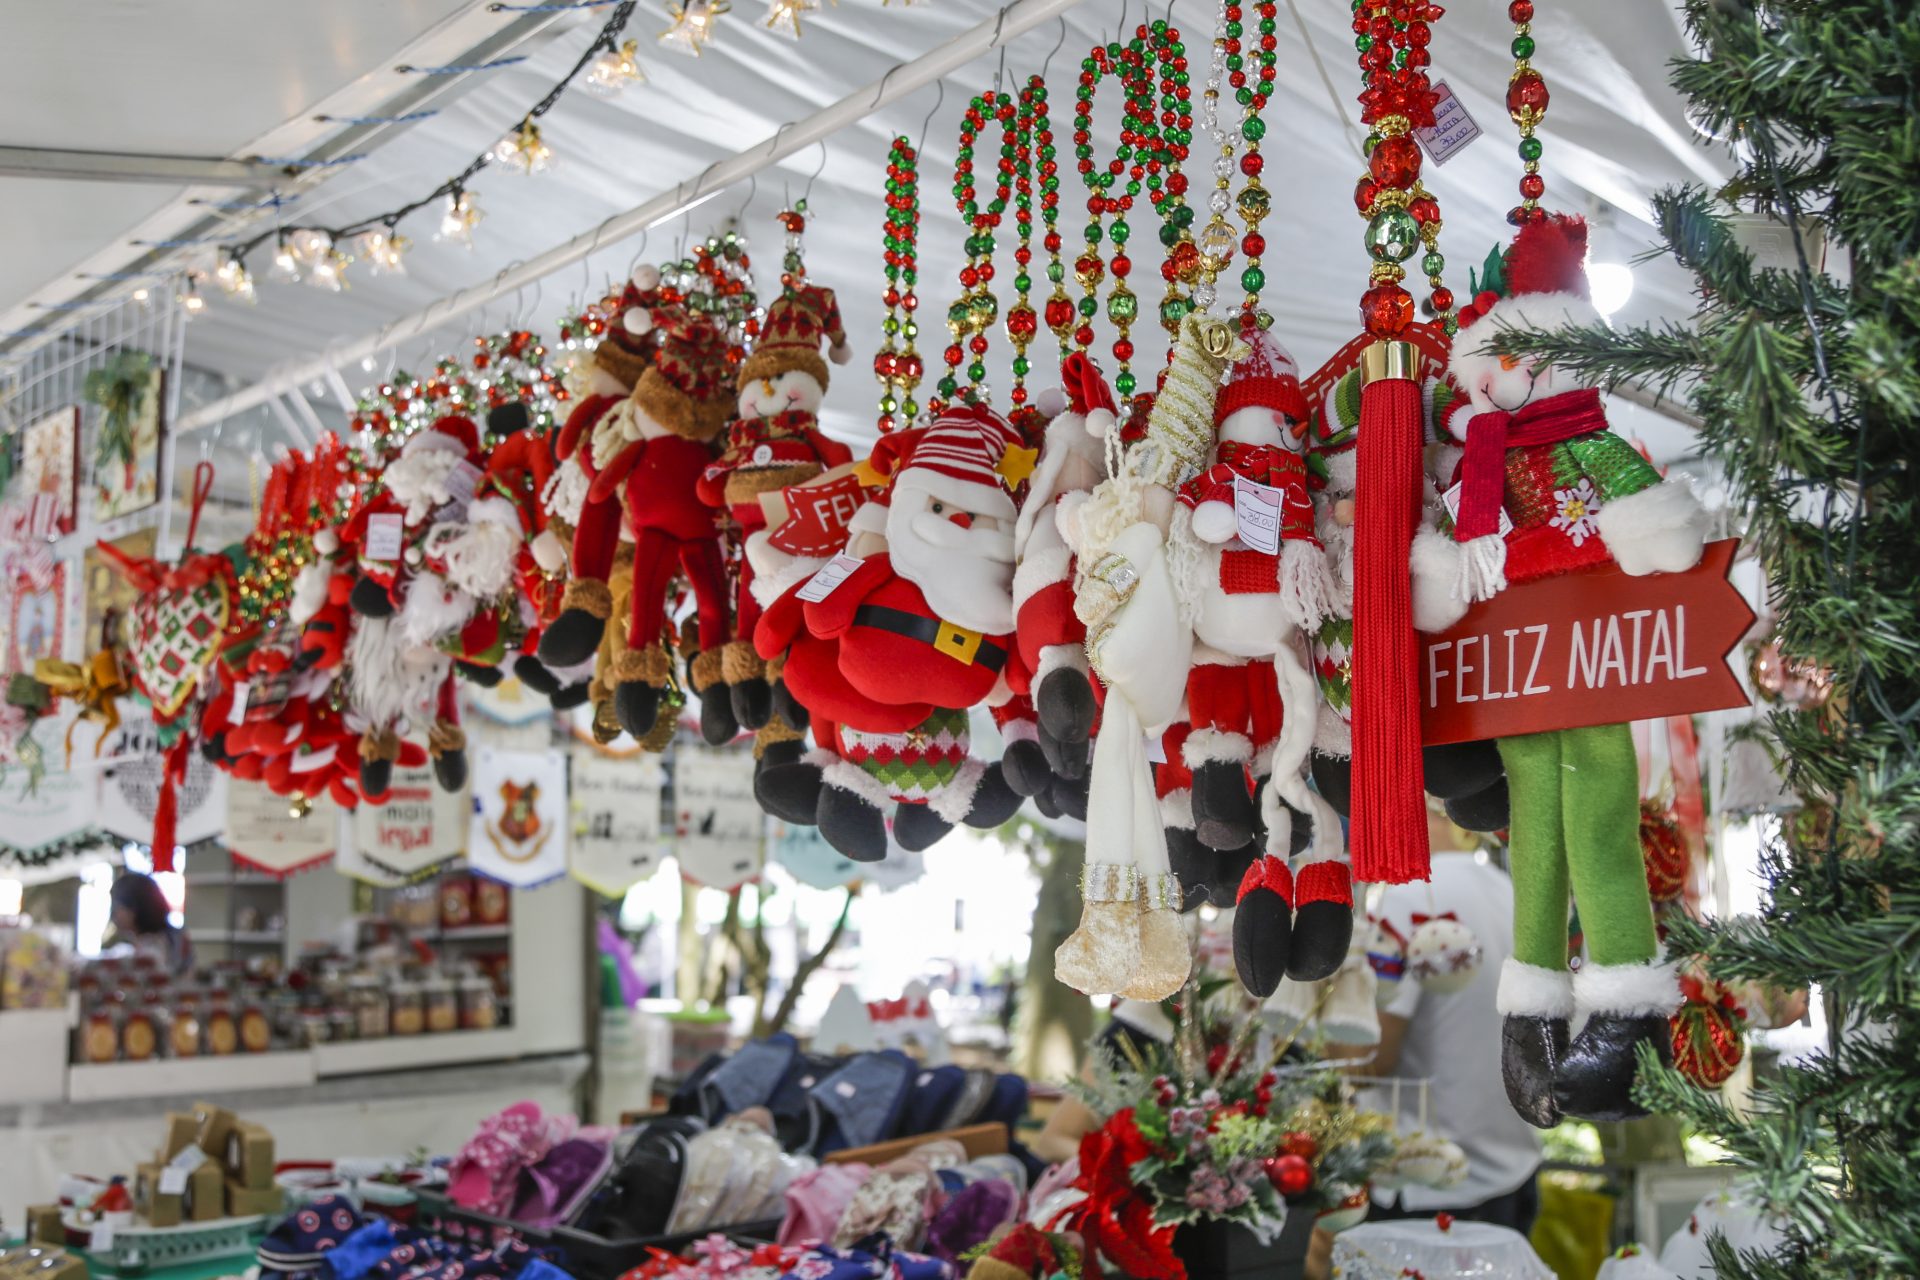 Bazares de Natal são ótima forma de fazer renda extra no final do ano.  Saiba como participar